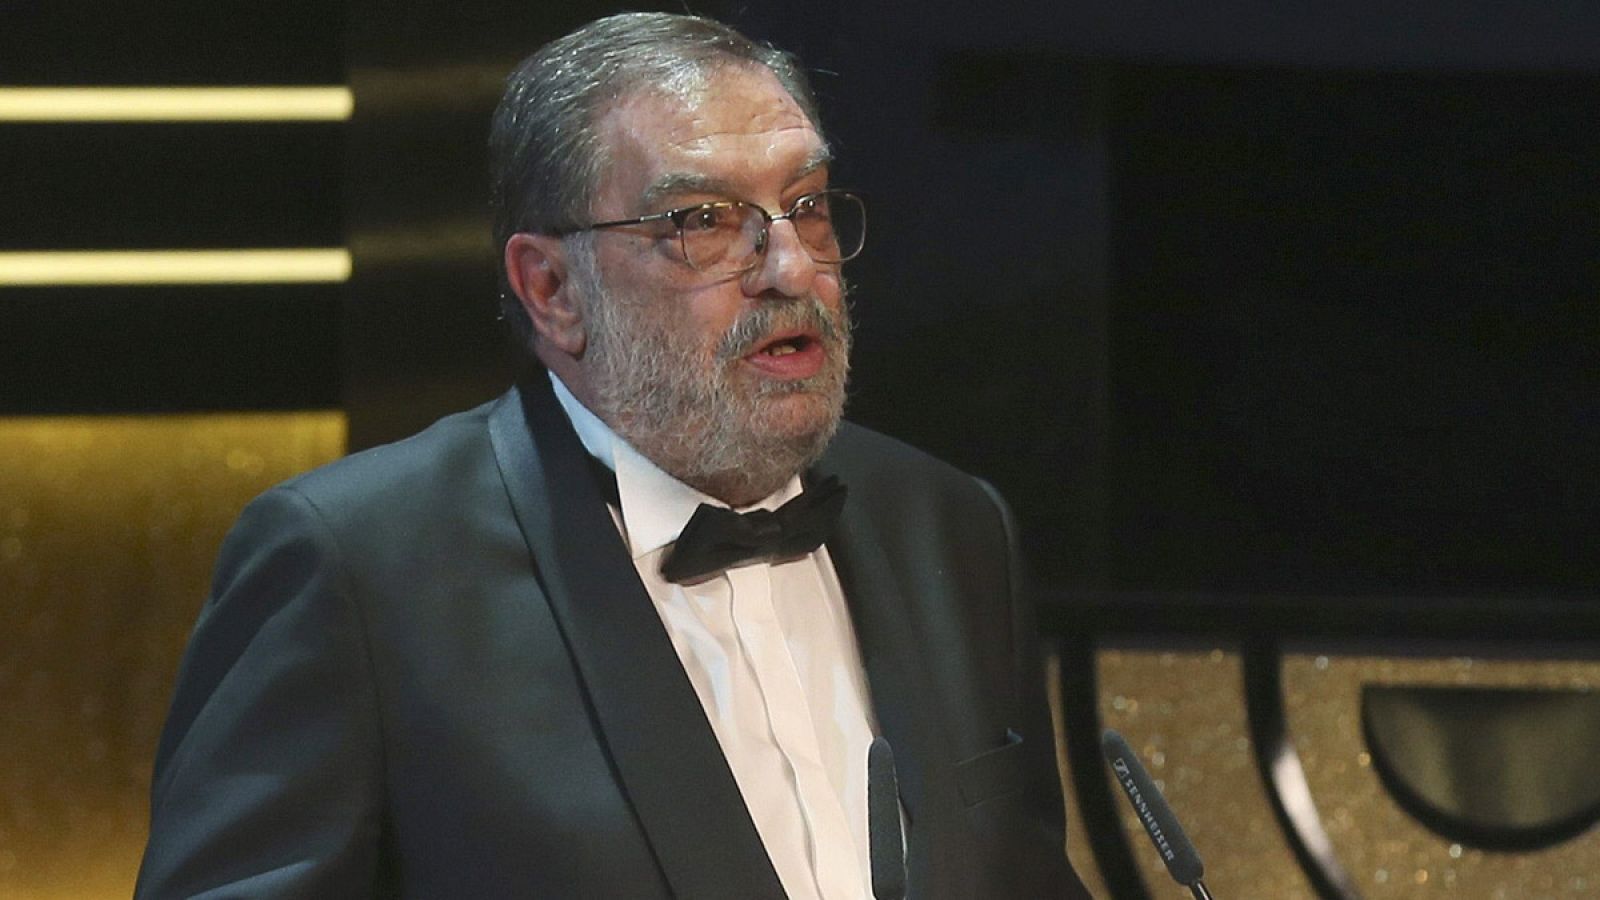 El productor y expresidente de la Academia de cine Enrique González Macho, en la gala de los premios Goya 2015.